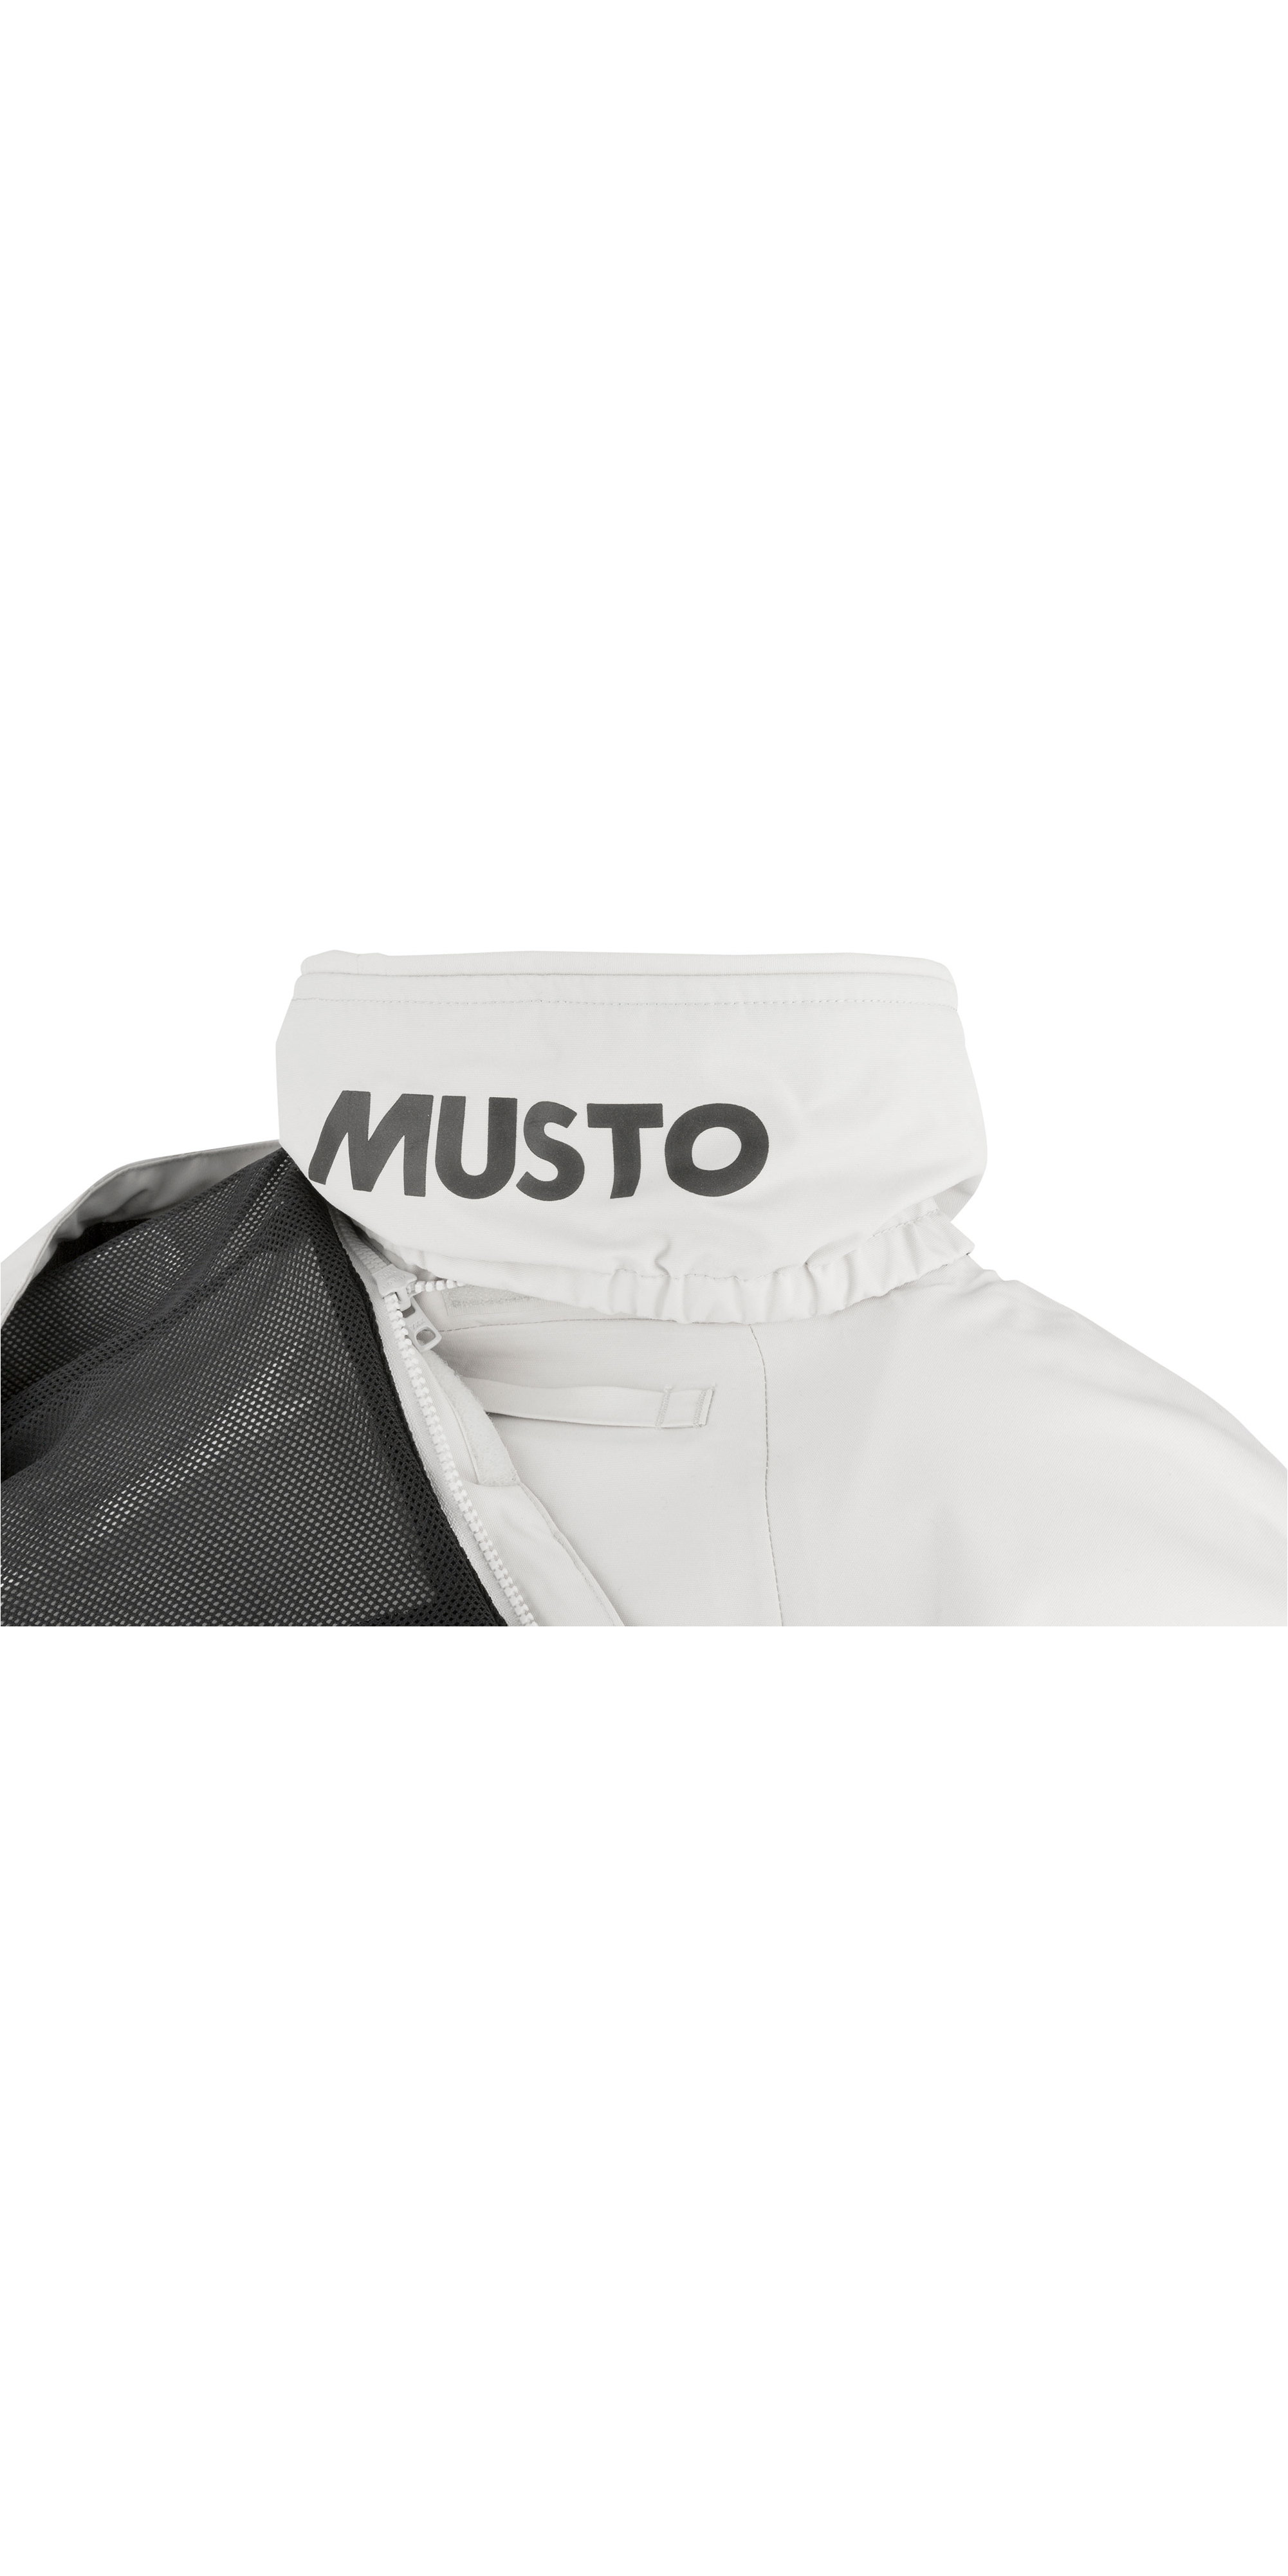 Black 2020 Musto Corsica BR1 Jacket 2.0 SMJK094-991 